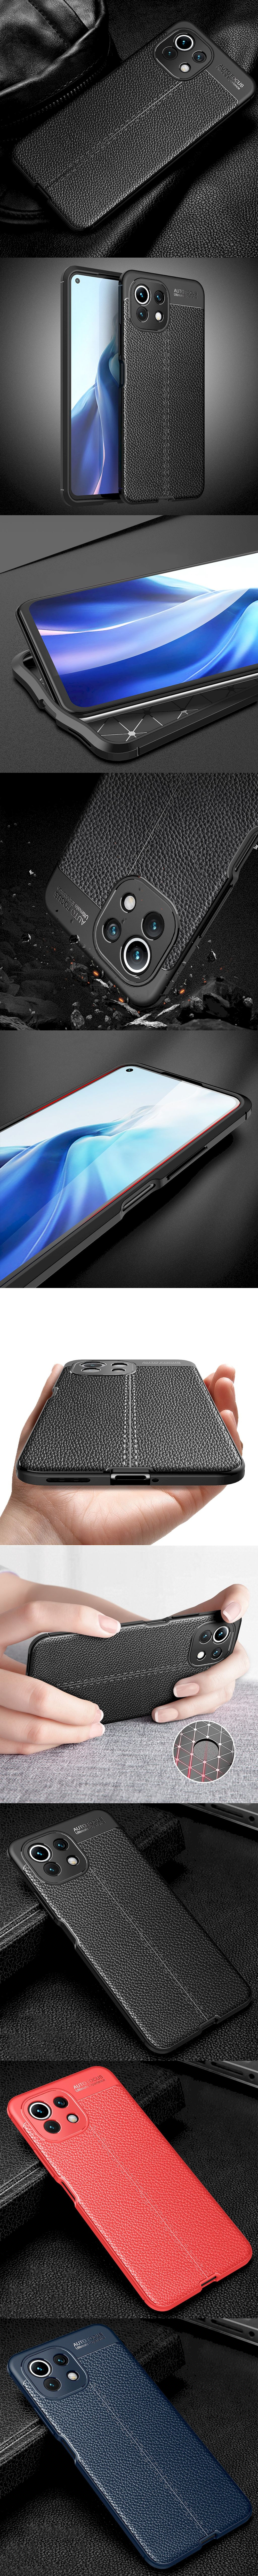 285-小米-皮革紋造型超薄全包手機殼背蓋(小米 11 Lite 5G)